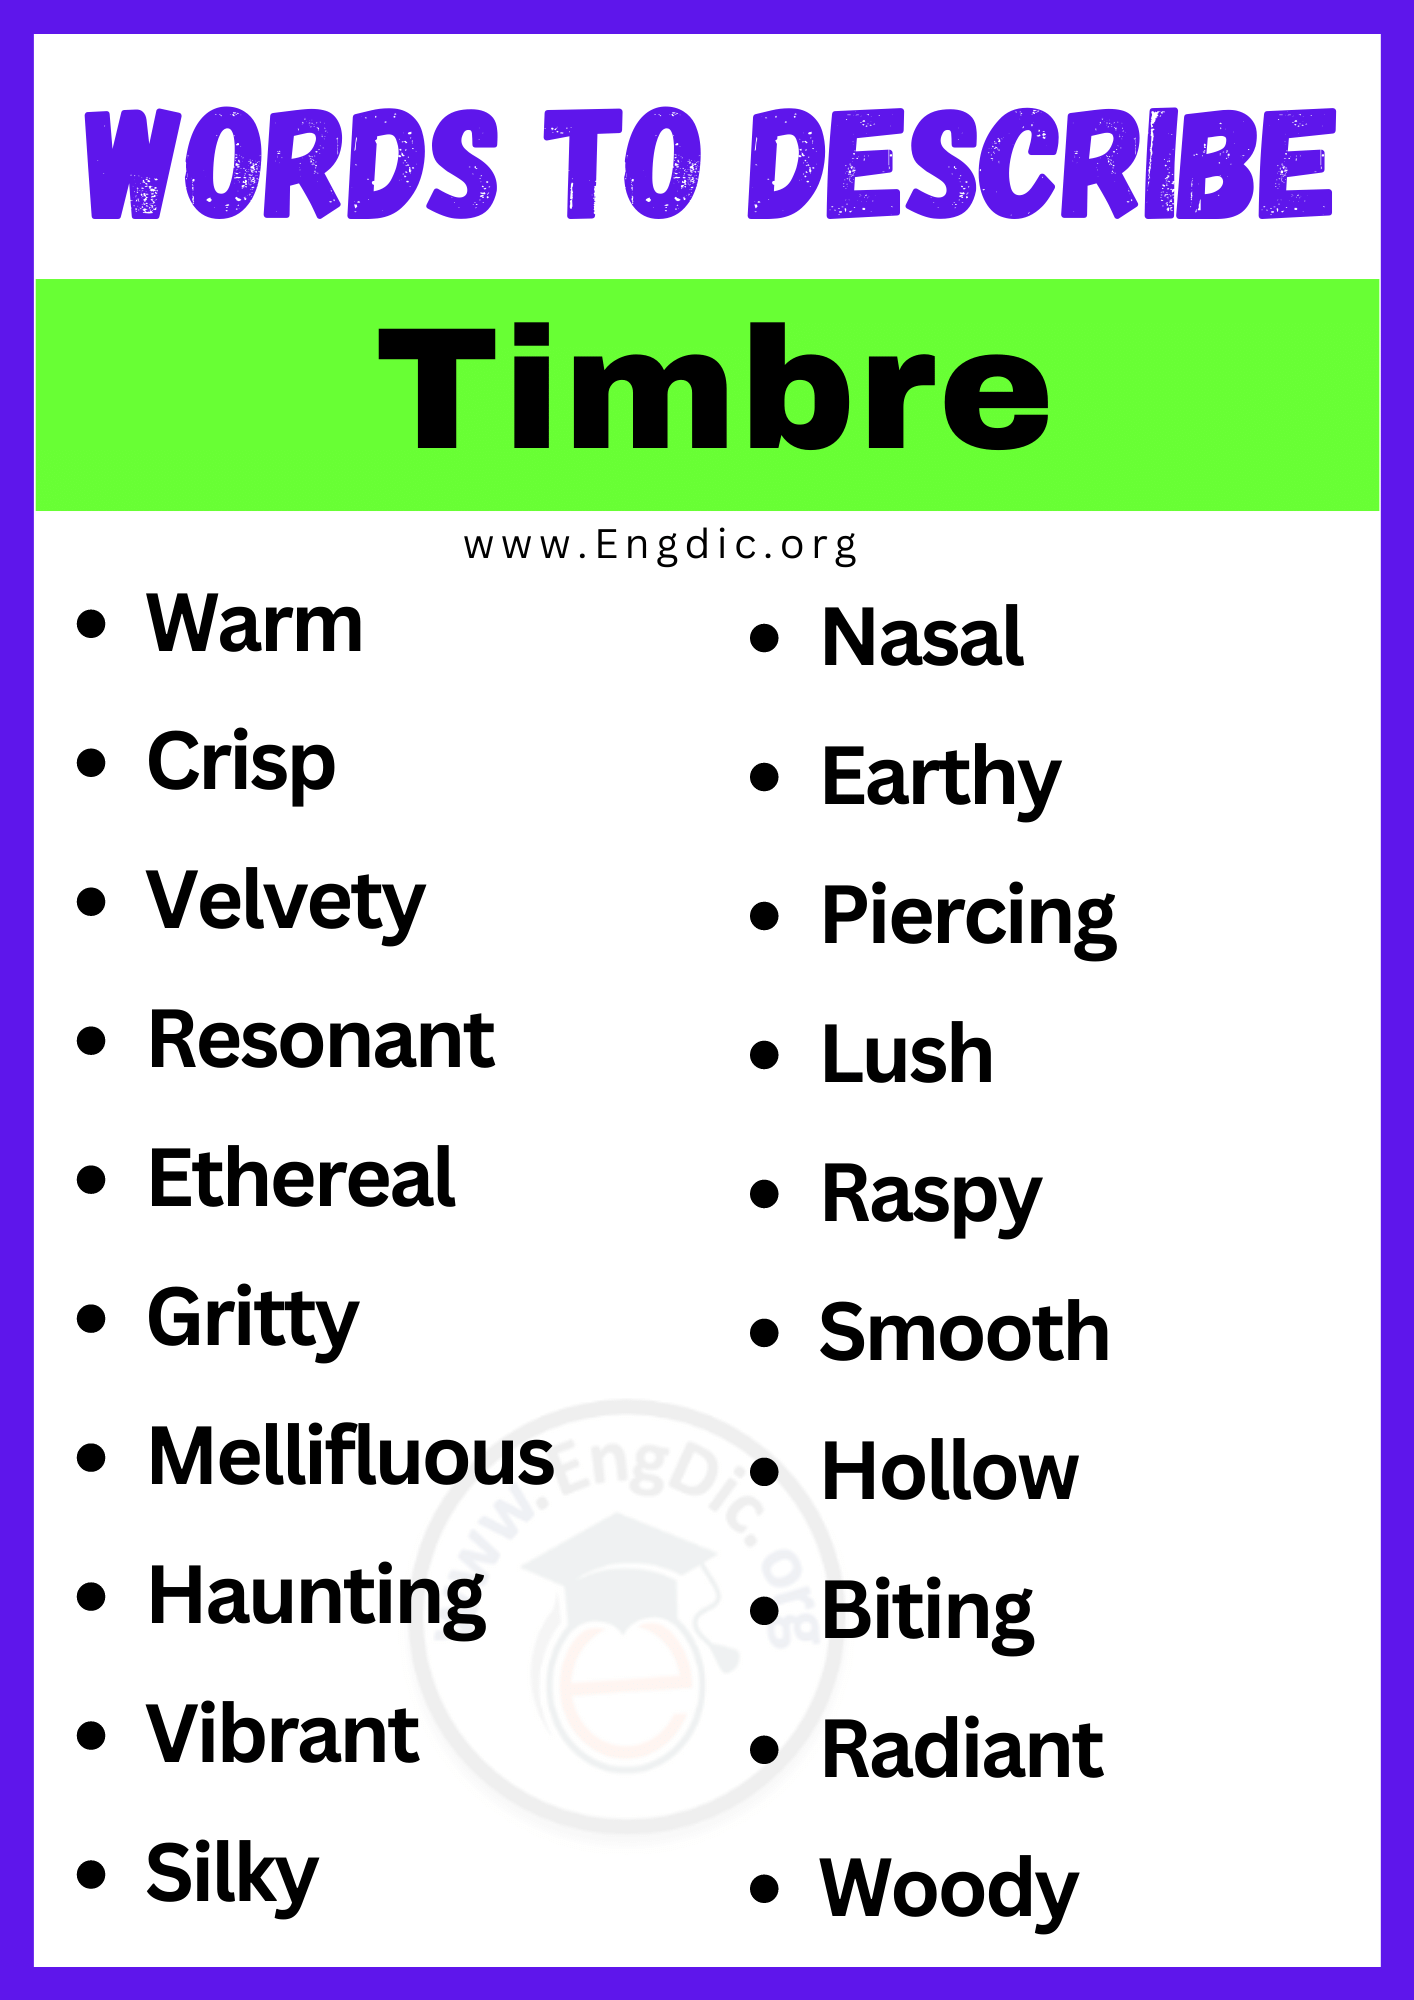 Words to Describe a Timbre